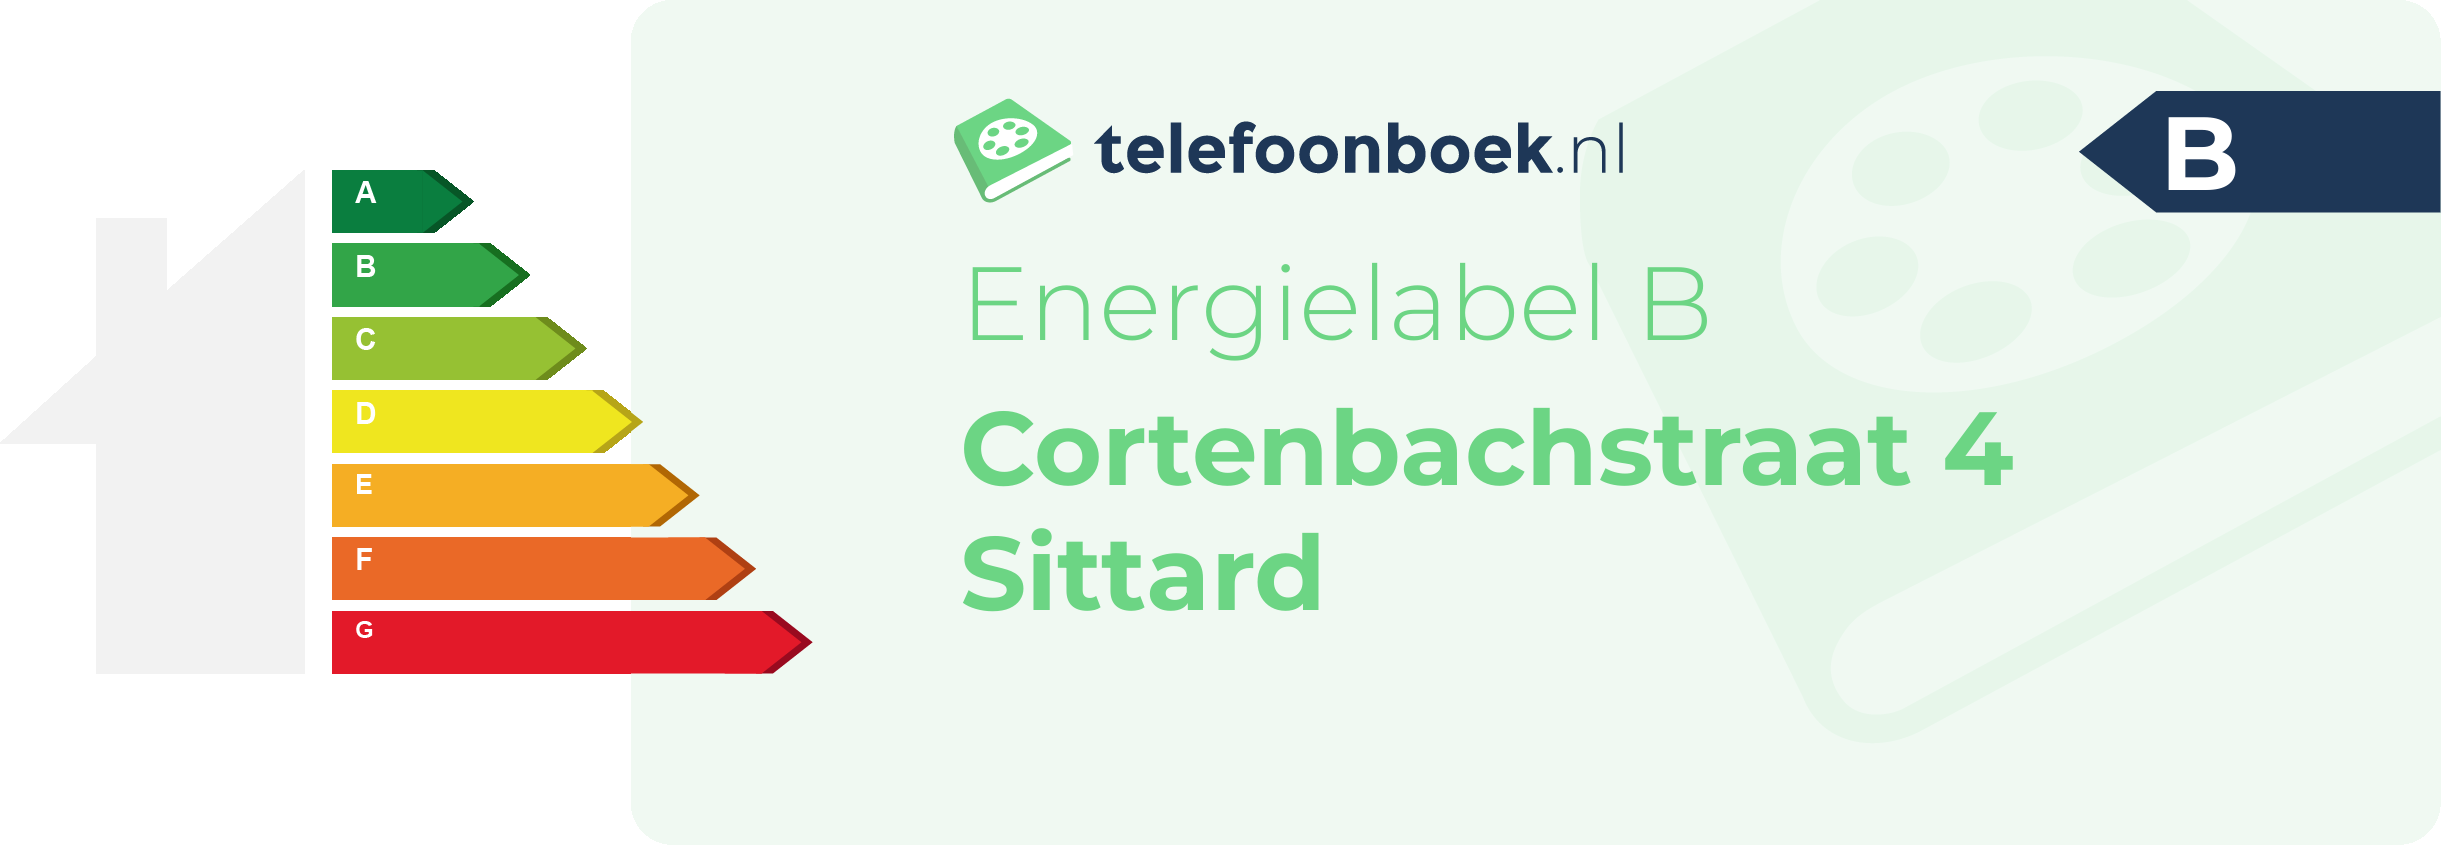 Energielabel Cortenbachstraat 4 Sittard